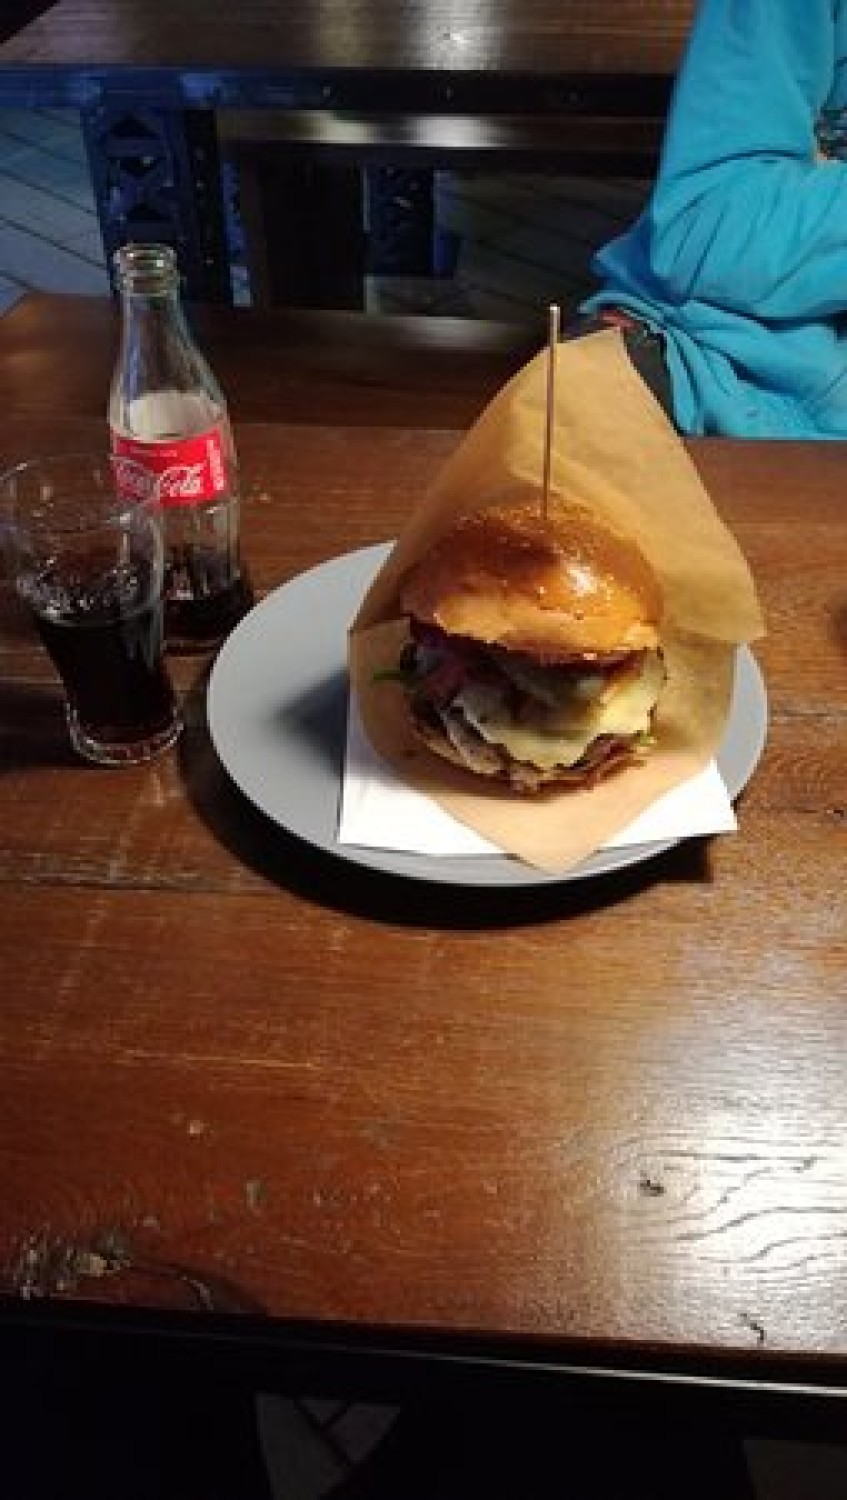 7. Darmozjad Grill&Burger serwuje dania prosto z Ameryki.